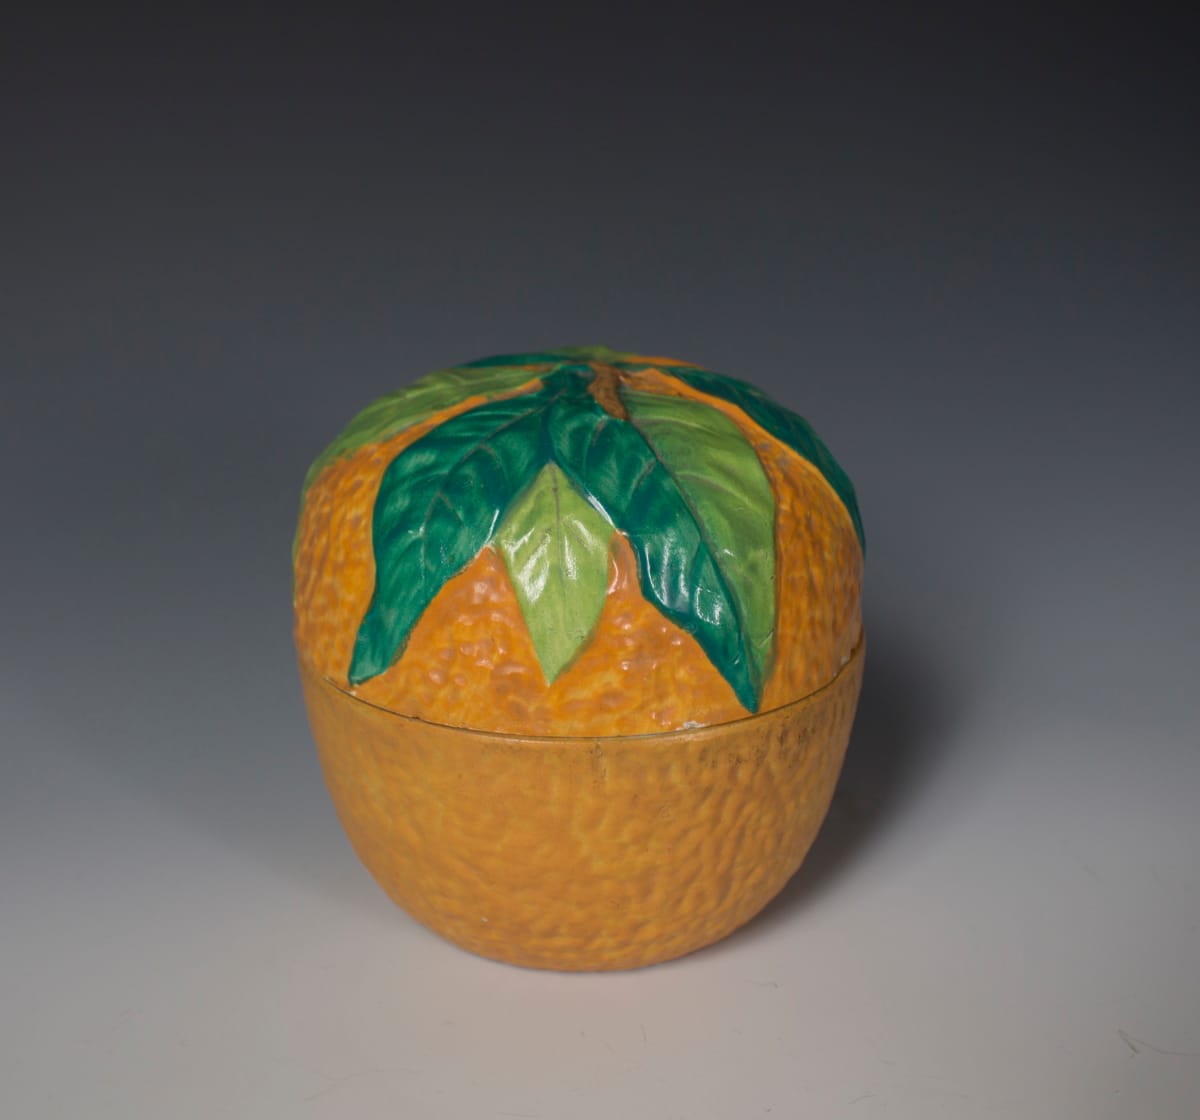 Marmalade Pot by F.&R. Pratt & Co. 